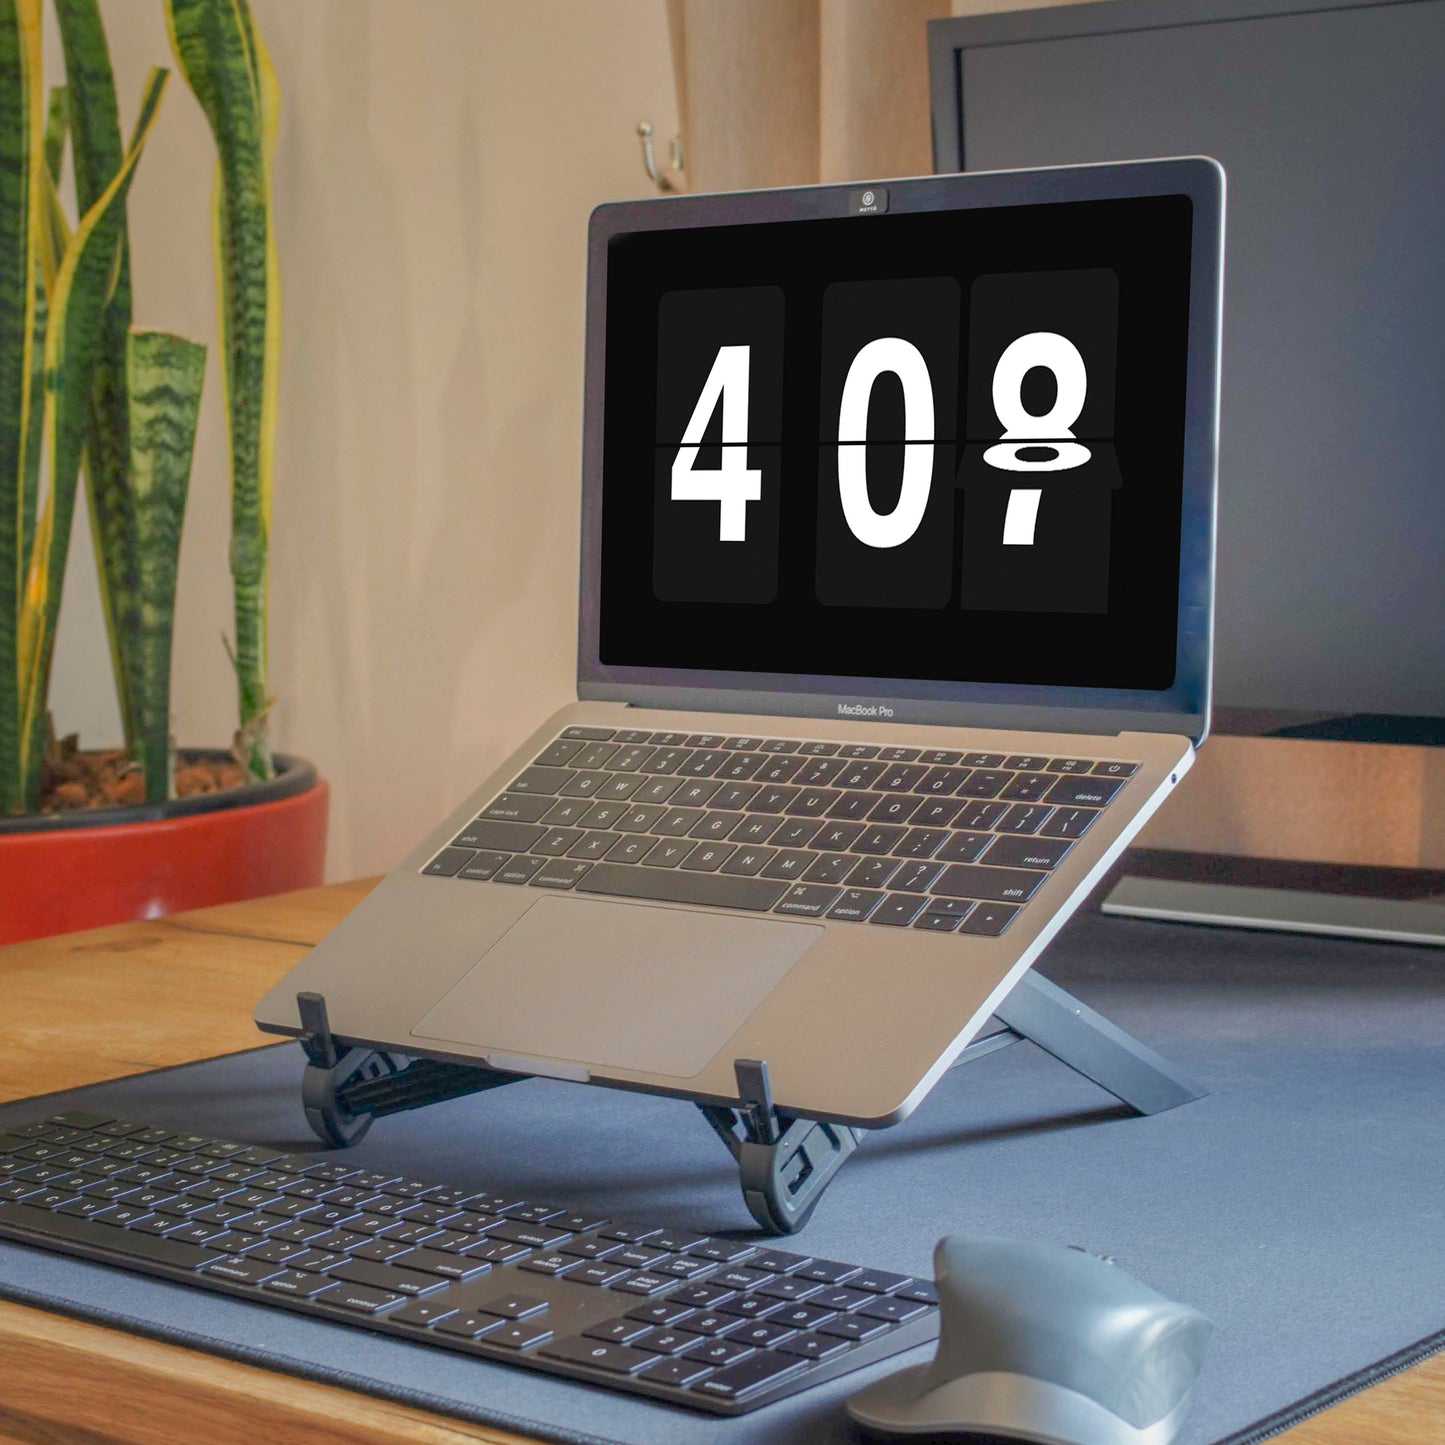 Nexstand K7 draagbare laptopverhoger